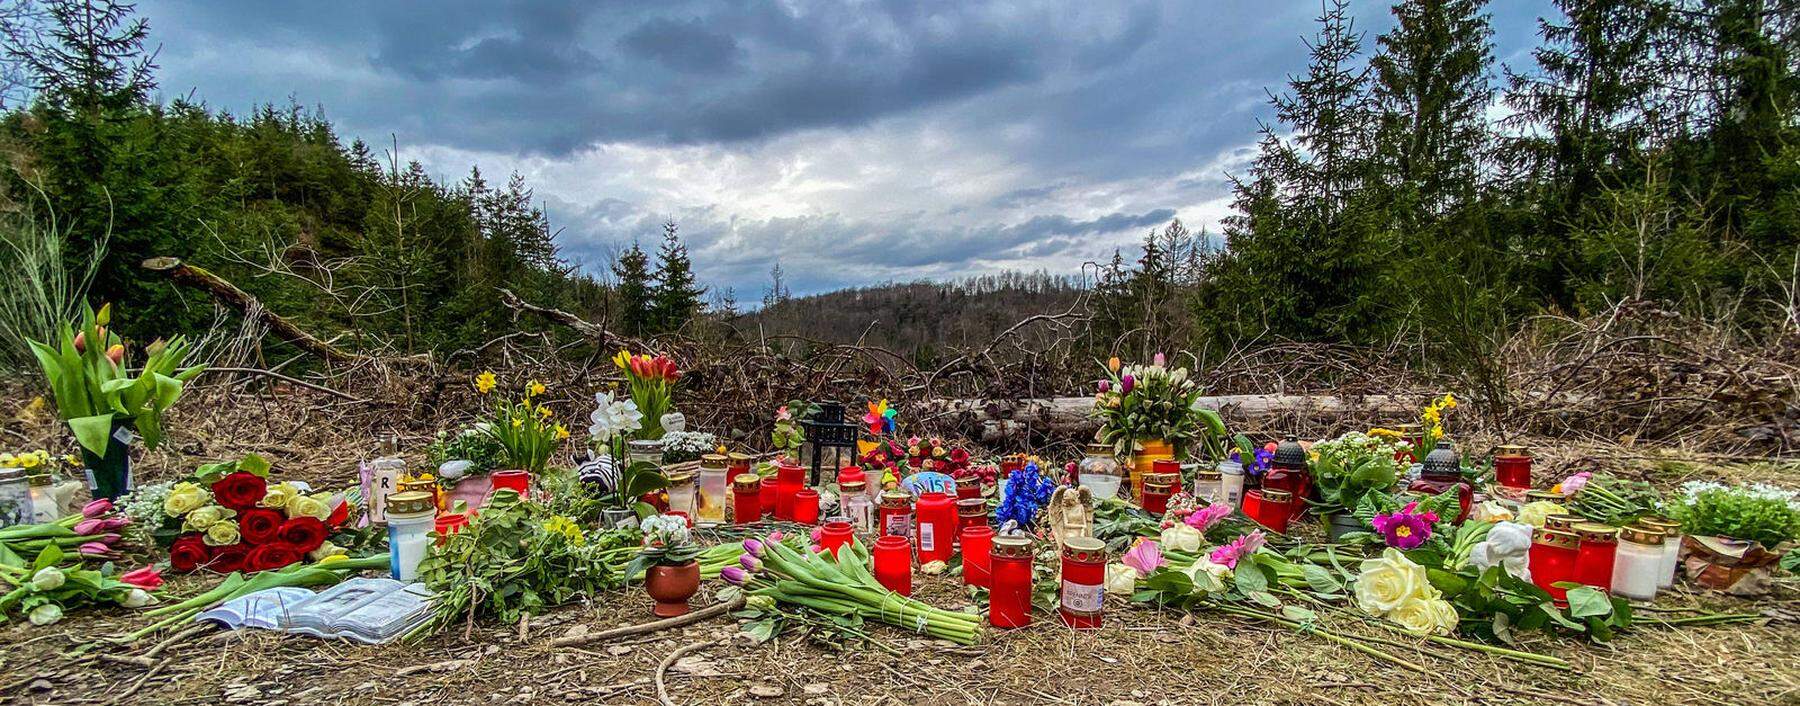 Trauernde bringen Kerzen und Blumen, um der Verstorbenen zu gedenken.